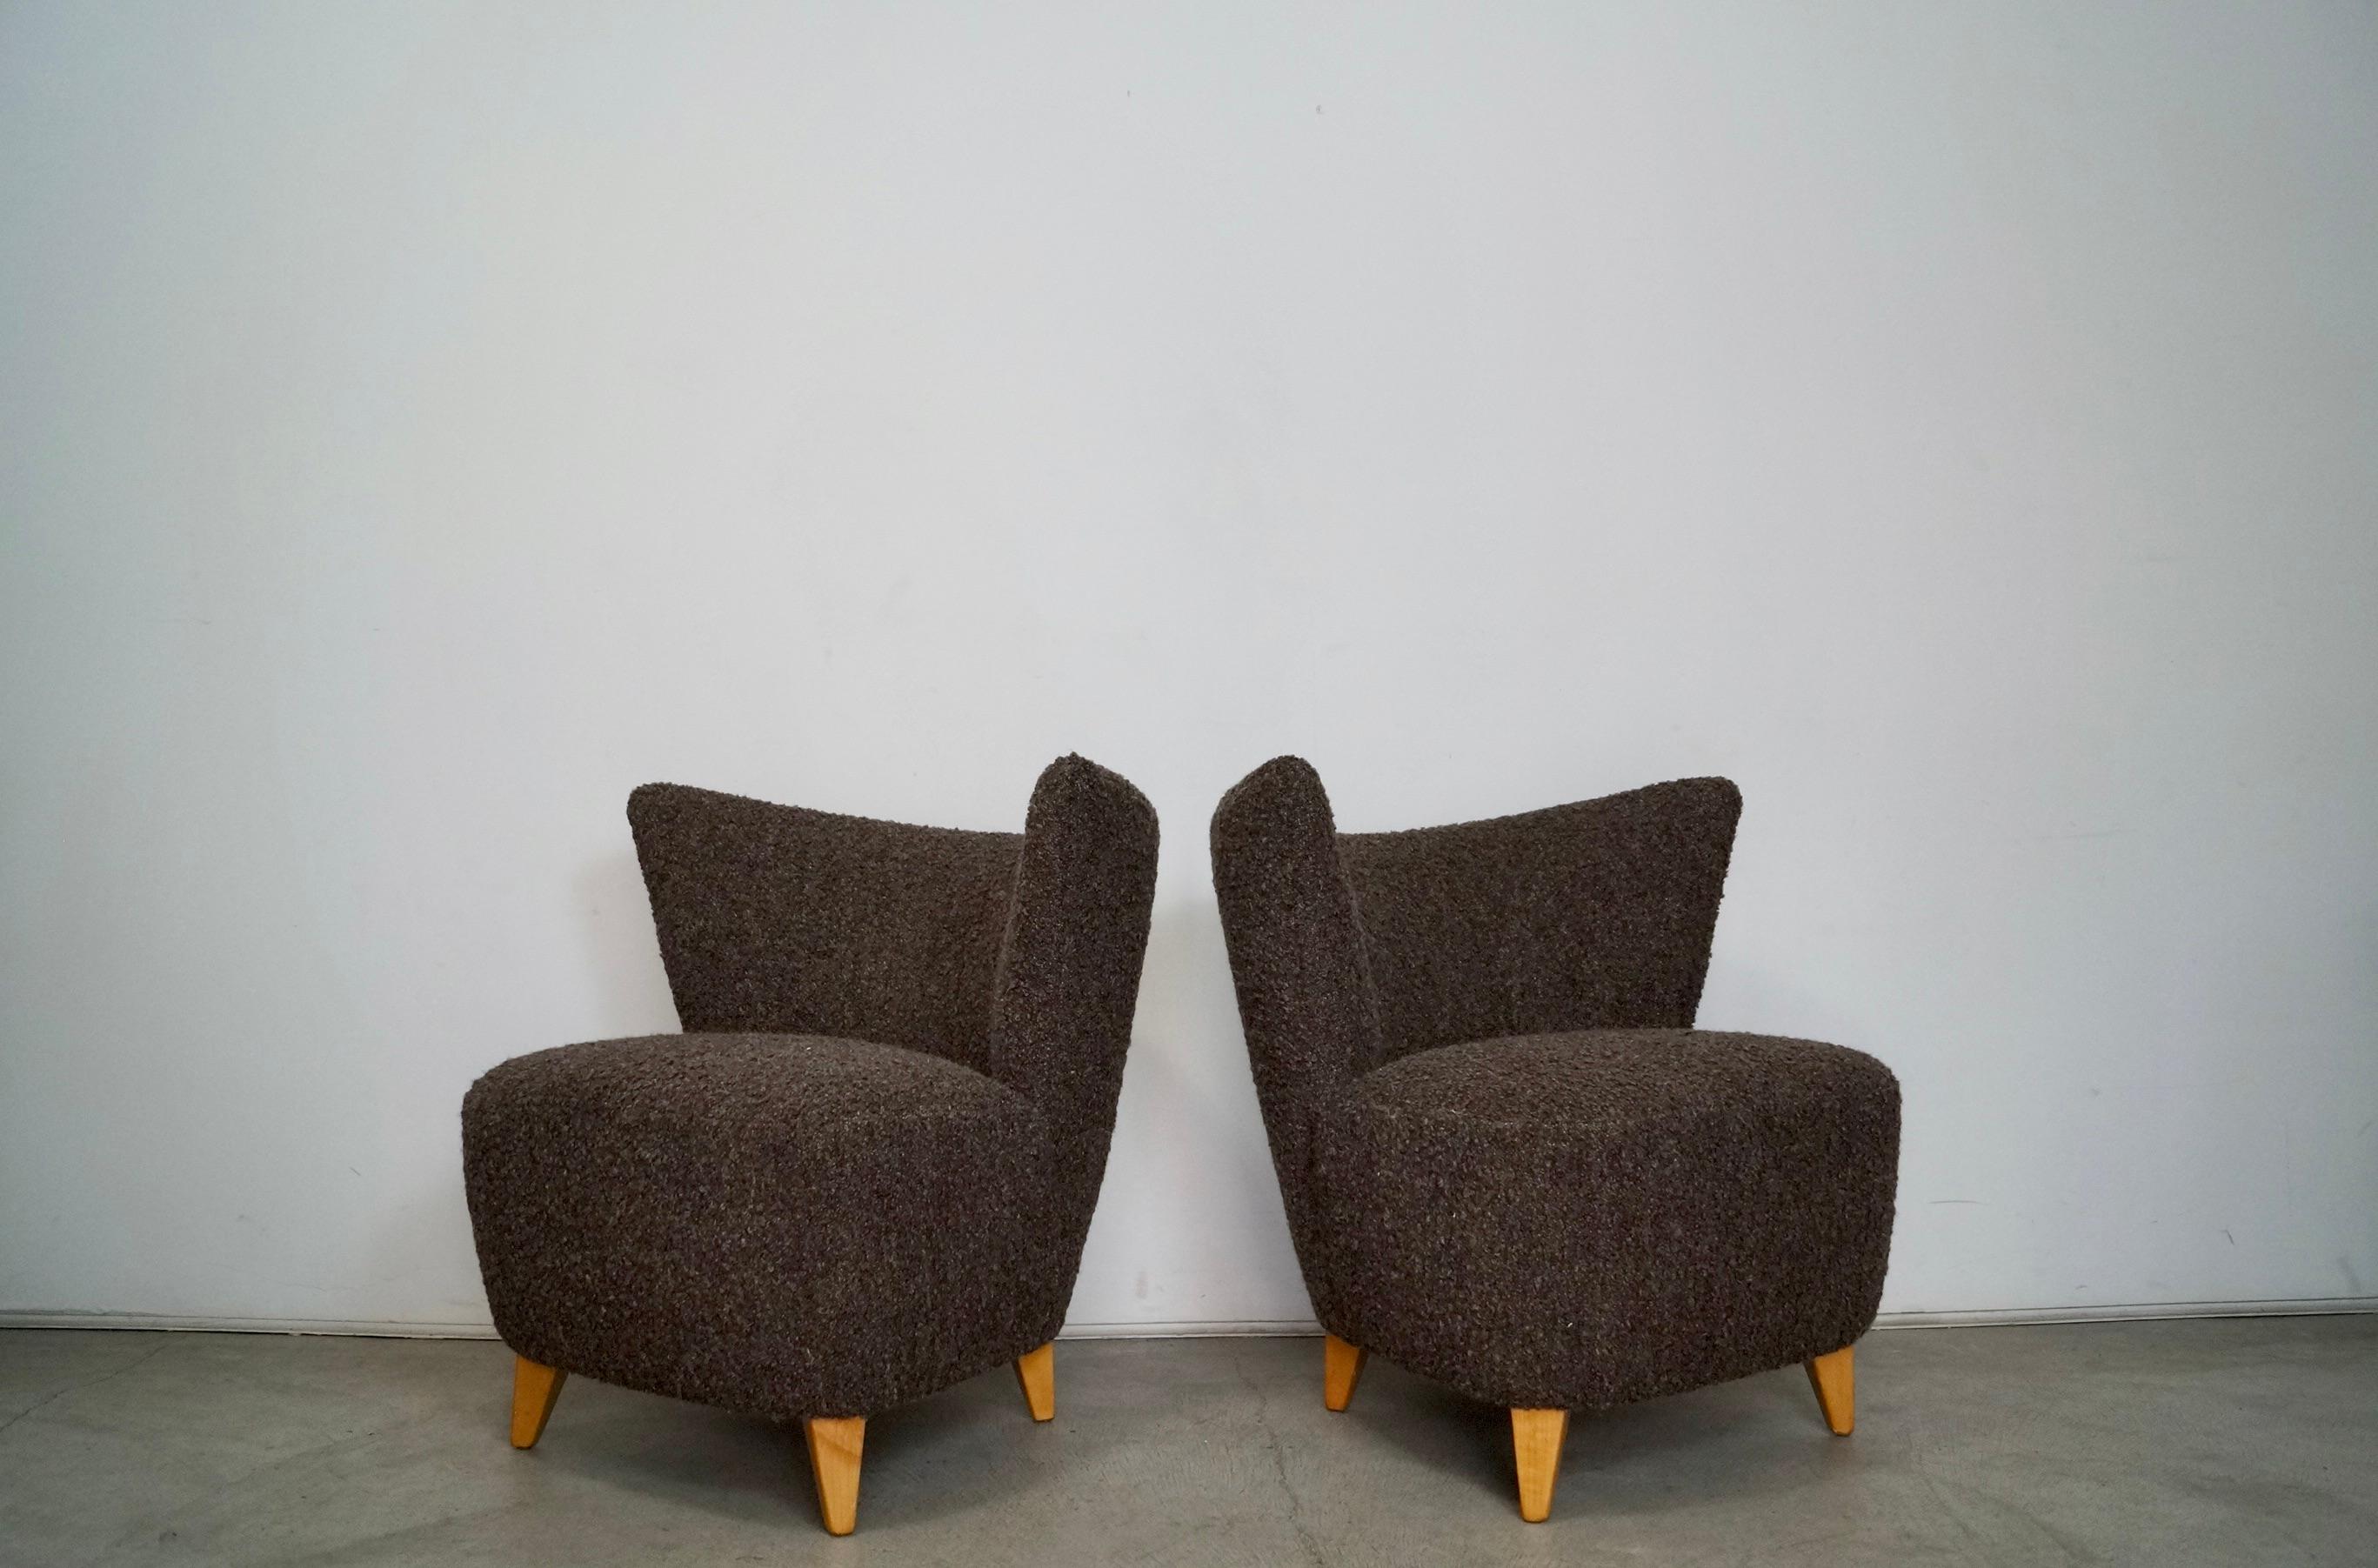 Paire de chaises de salon Art Deco Midcentury Modern originales à vendre. Ils ont été restaurés par des professionnels et sont aujourd'hui en état d'exposition. Les pieds sont en bouleau massif et ont été refinis dans une finition en bouleau